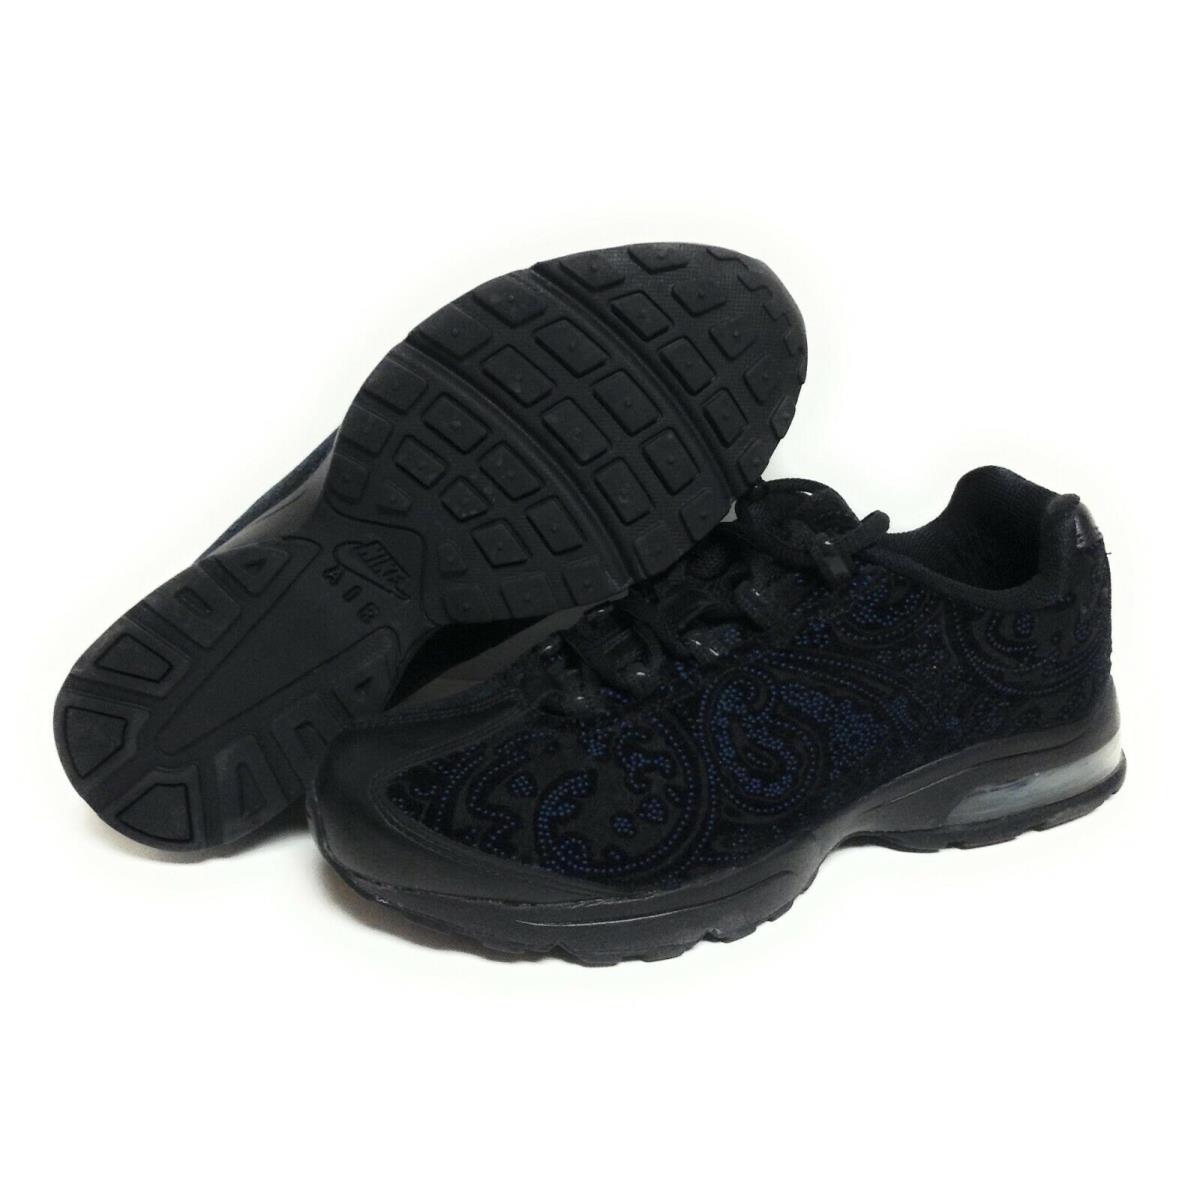 Womens Nike Air Max `95 Zen Premium 314043 001 2007 Deadstock B Sneakers Shoes